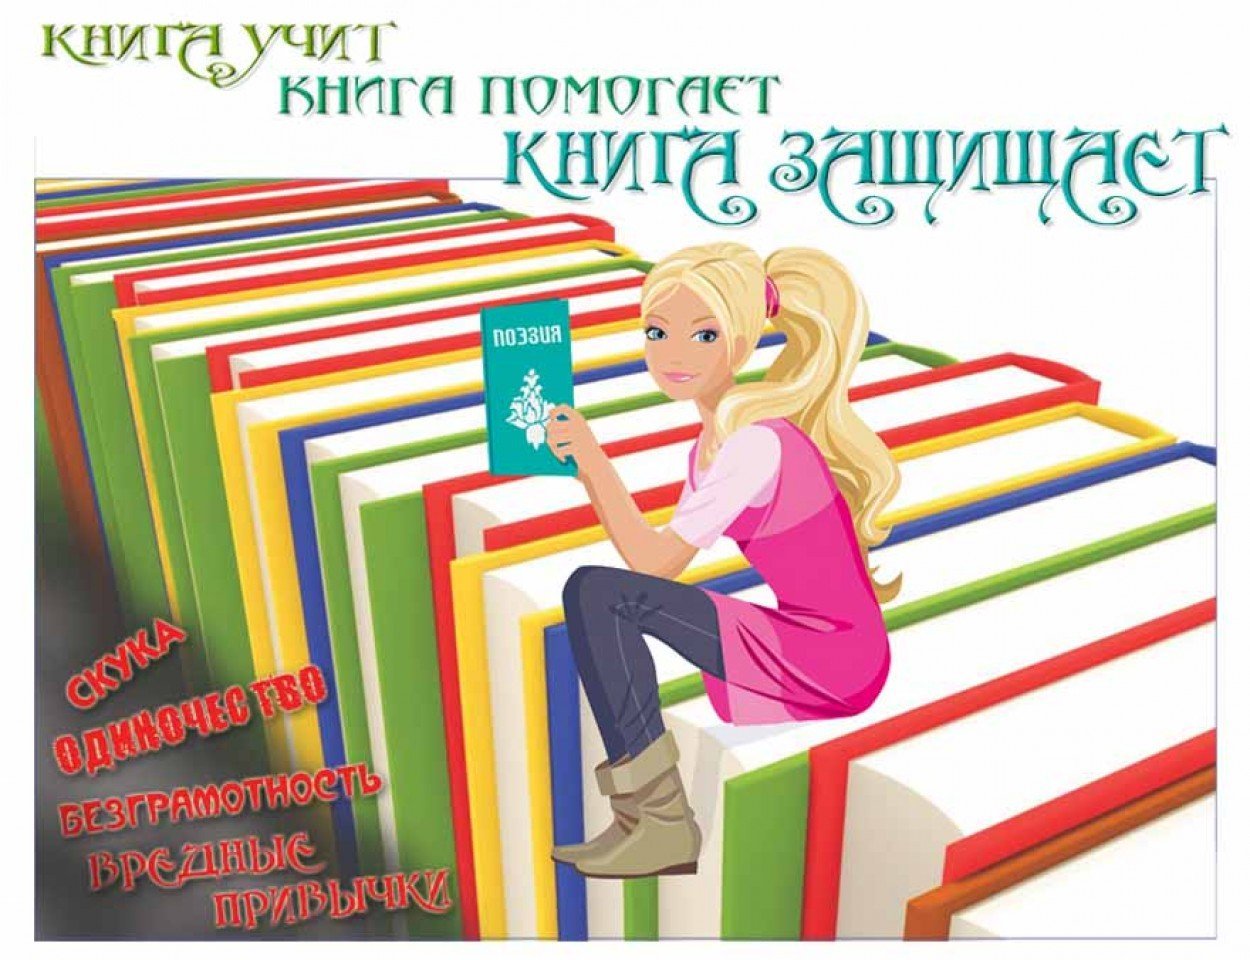 Библиотека день молодежи. Реклама книги. Реклама книг в библиотеке. Школьная библиотека. Чтение книг.